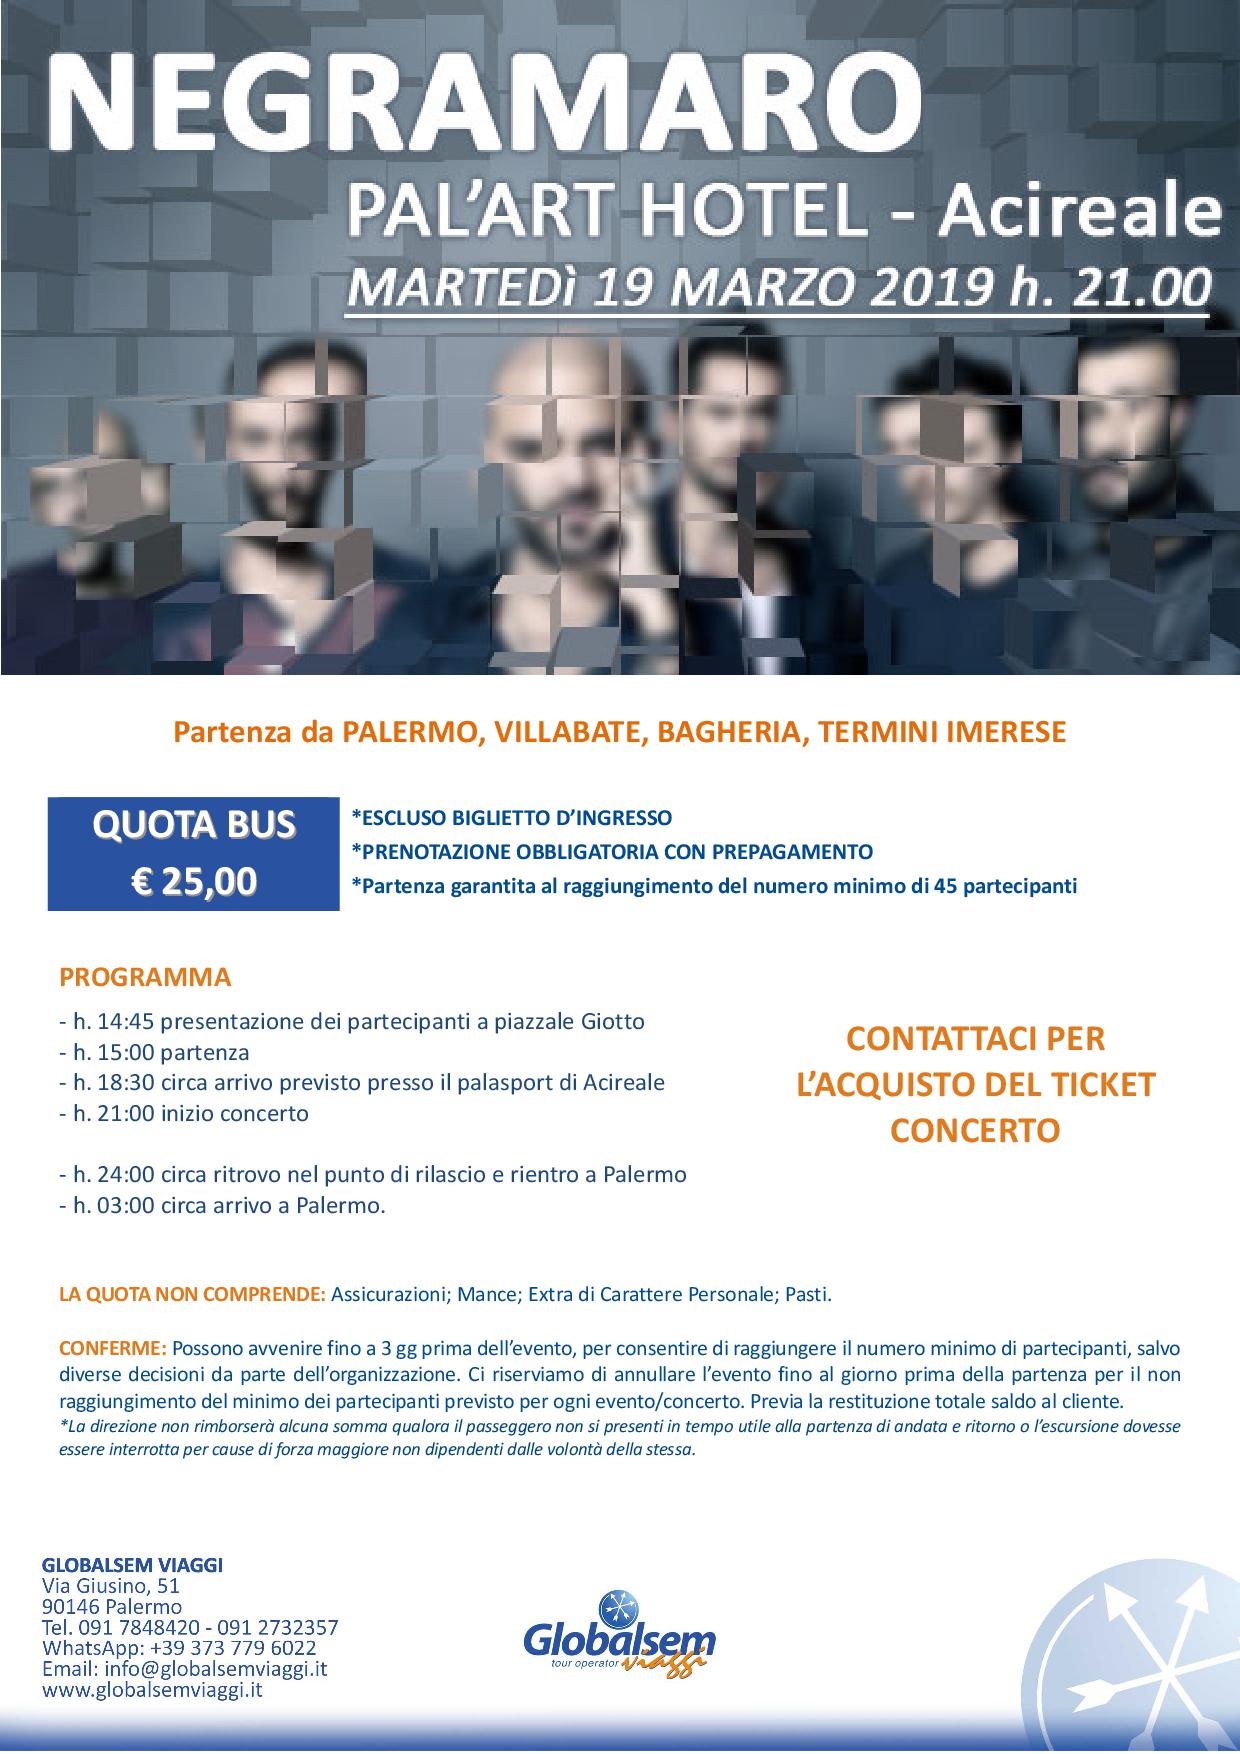 NEGRAMARO in CONCERTO marzo 2019 PALASPORT Acireale (CT) Pullman da Palermo